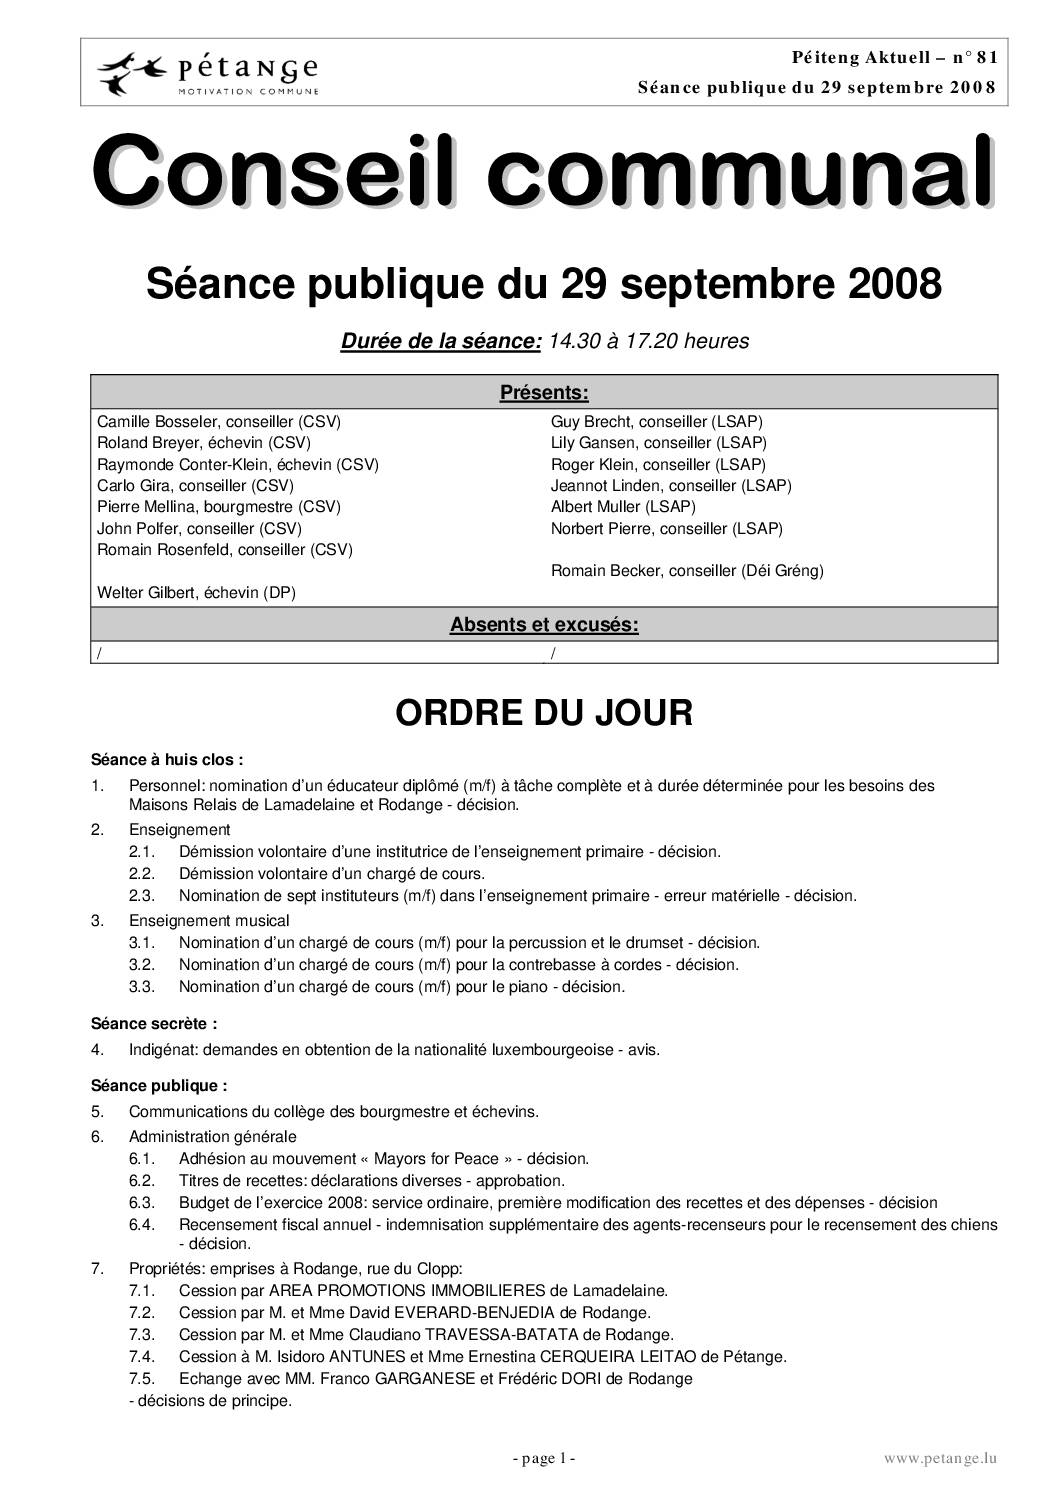 Rapport des séances du conseil communal du 29.09.2008, 27.10.2008 et 17.11.2008